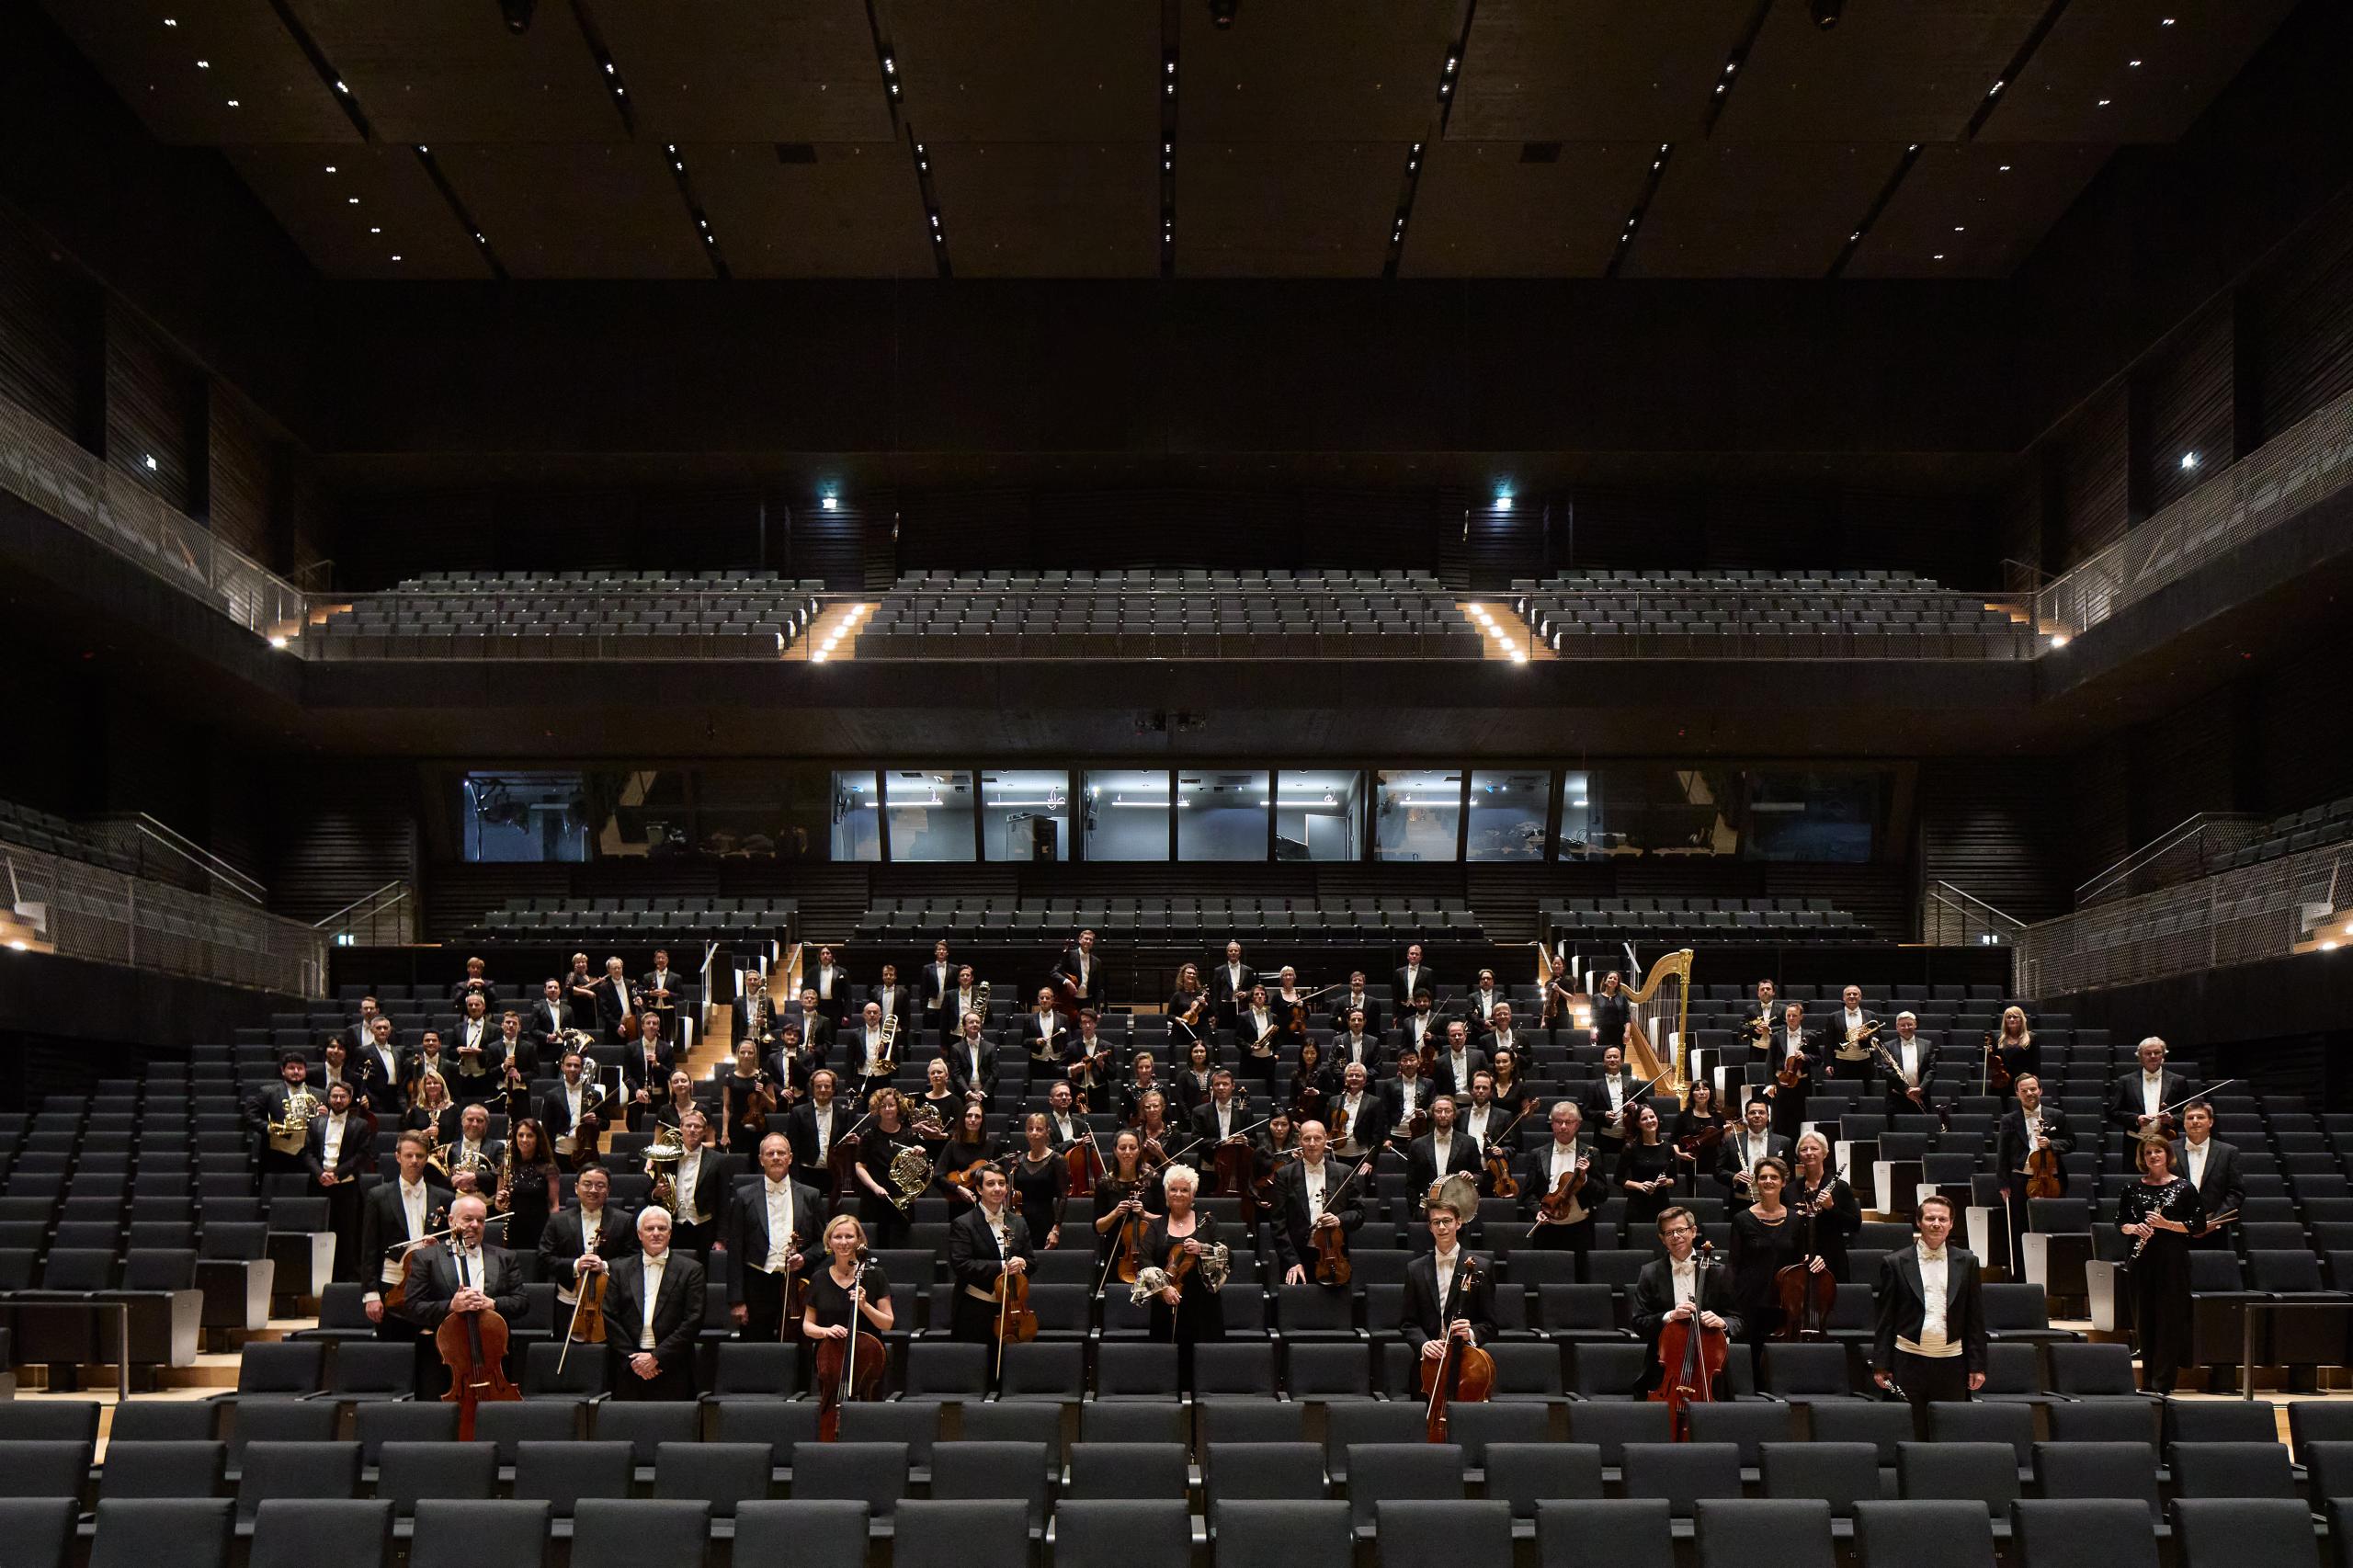 Dunkler Konzertsaal, Blick in den Zuschauerraum mit Sitzen und der Lichtregie. Die Musiker*innen stehen mit ihren Instrumenten zwischen den Sitzreihen